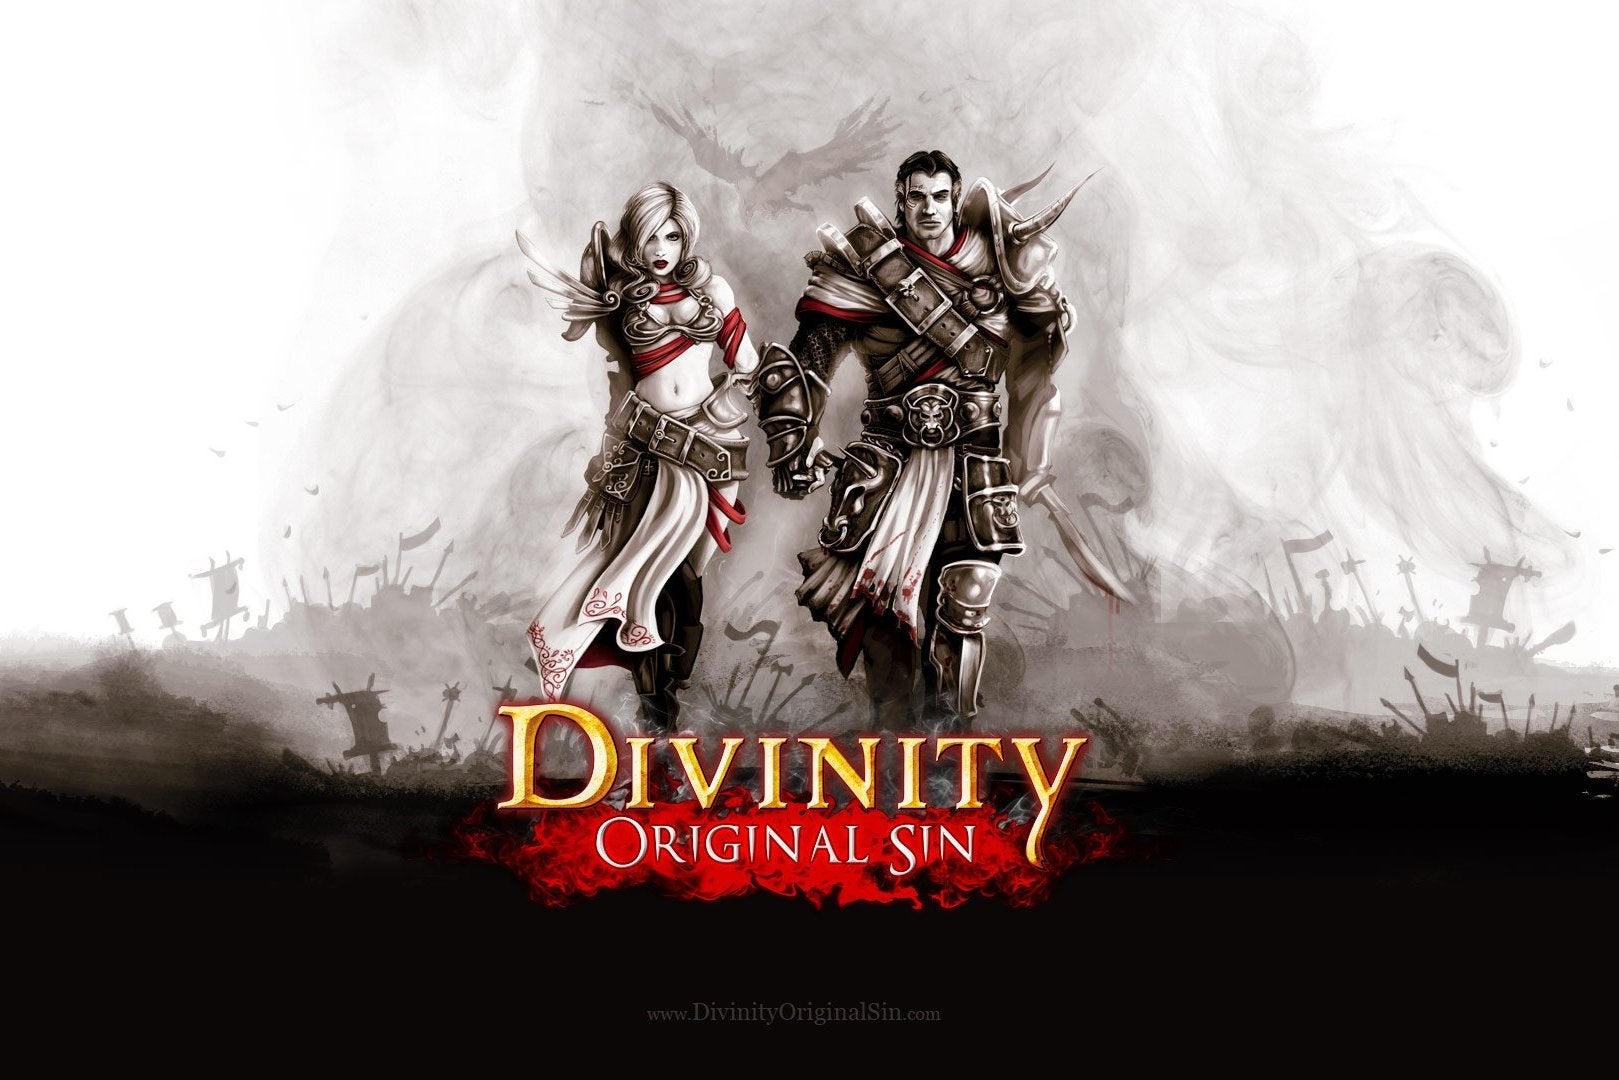 Immagine di Morto il compositore della soundtrack di Divinity: Original Sin, Kirill Pokrovsky